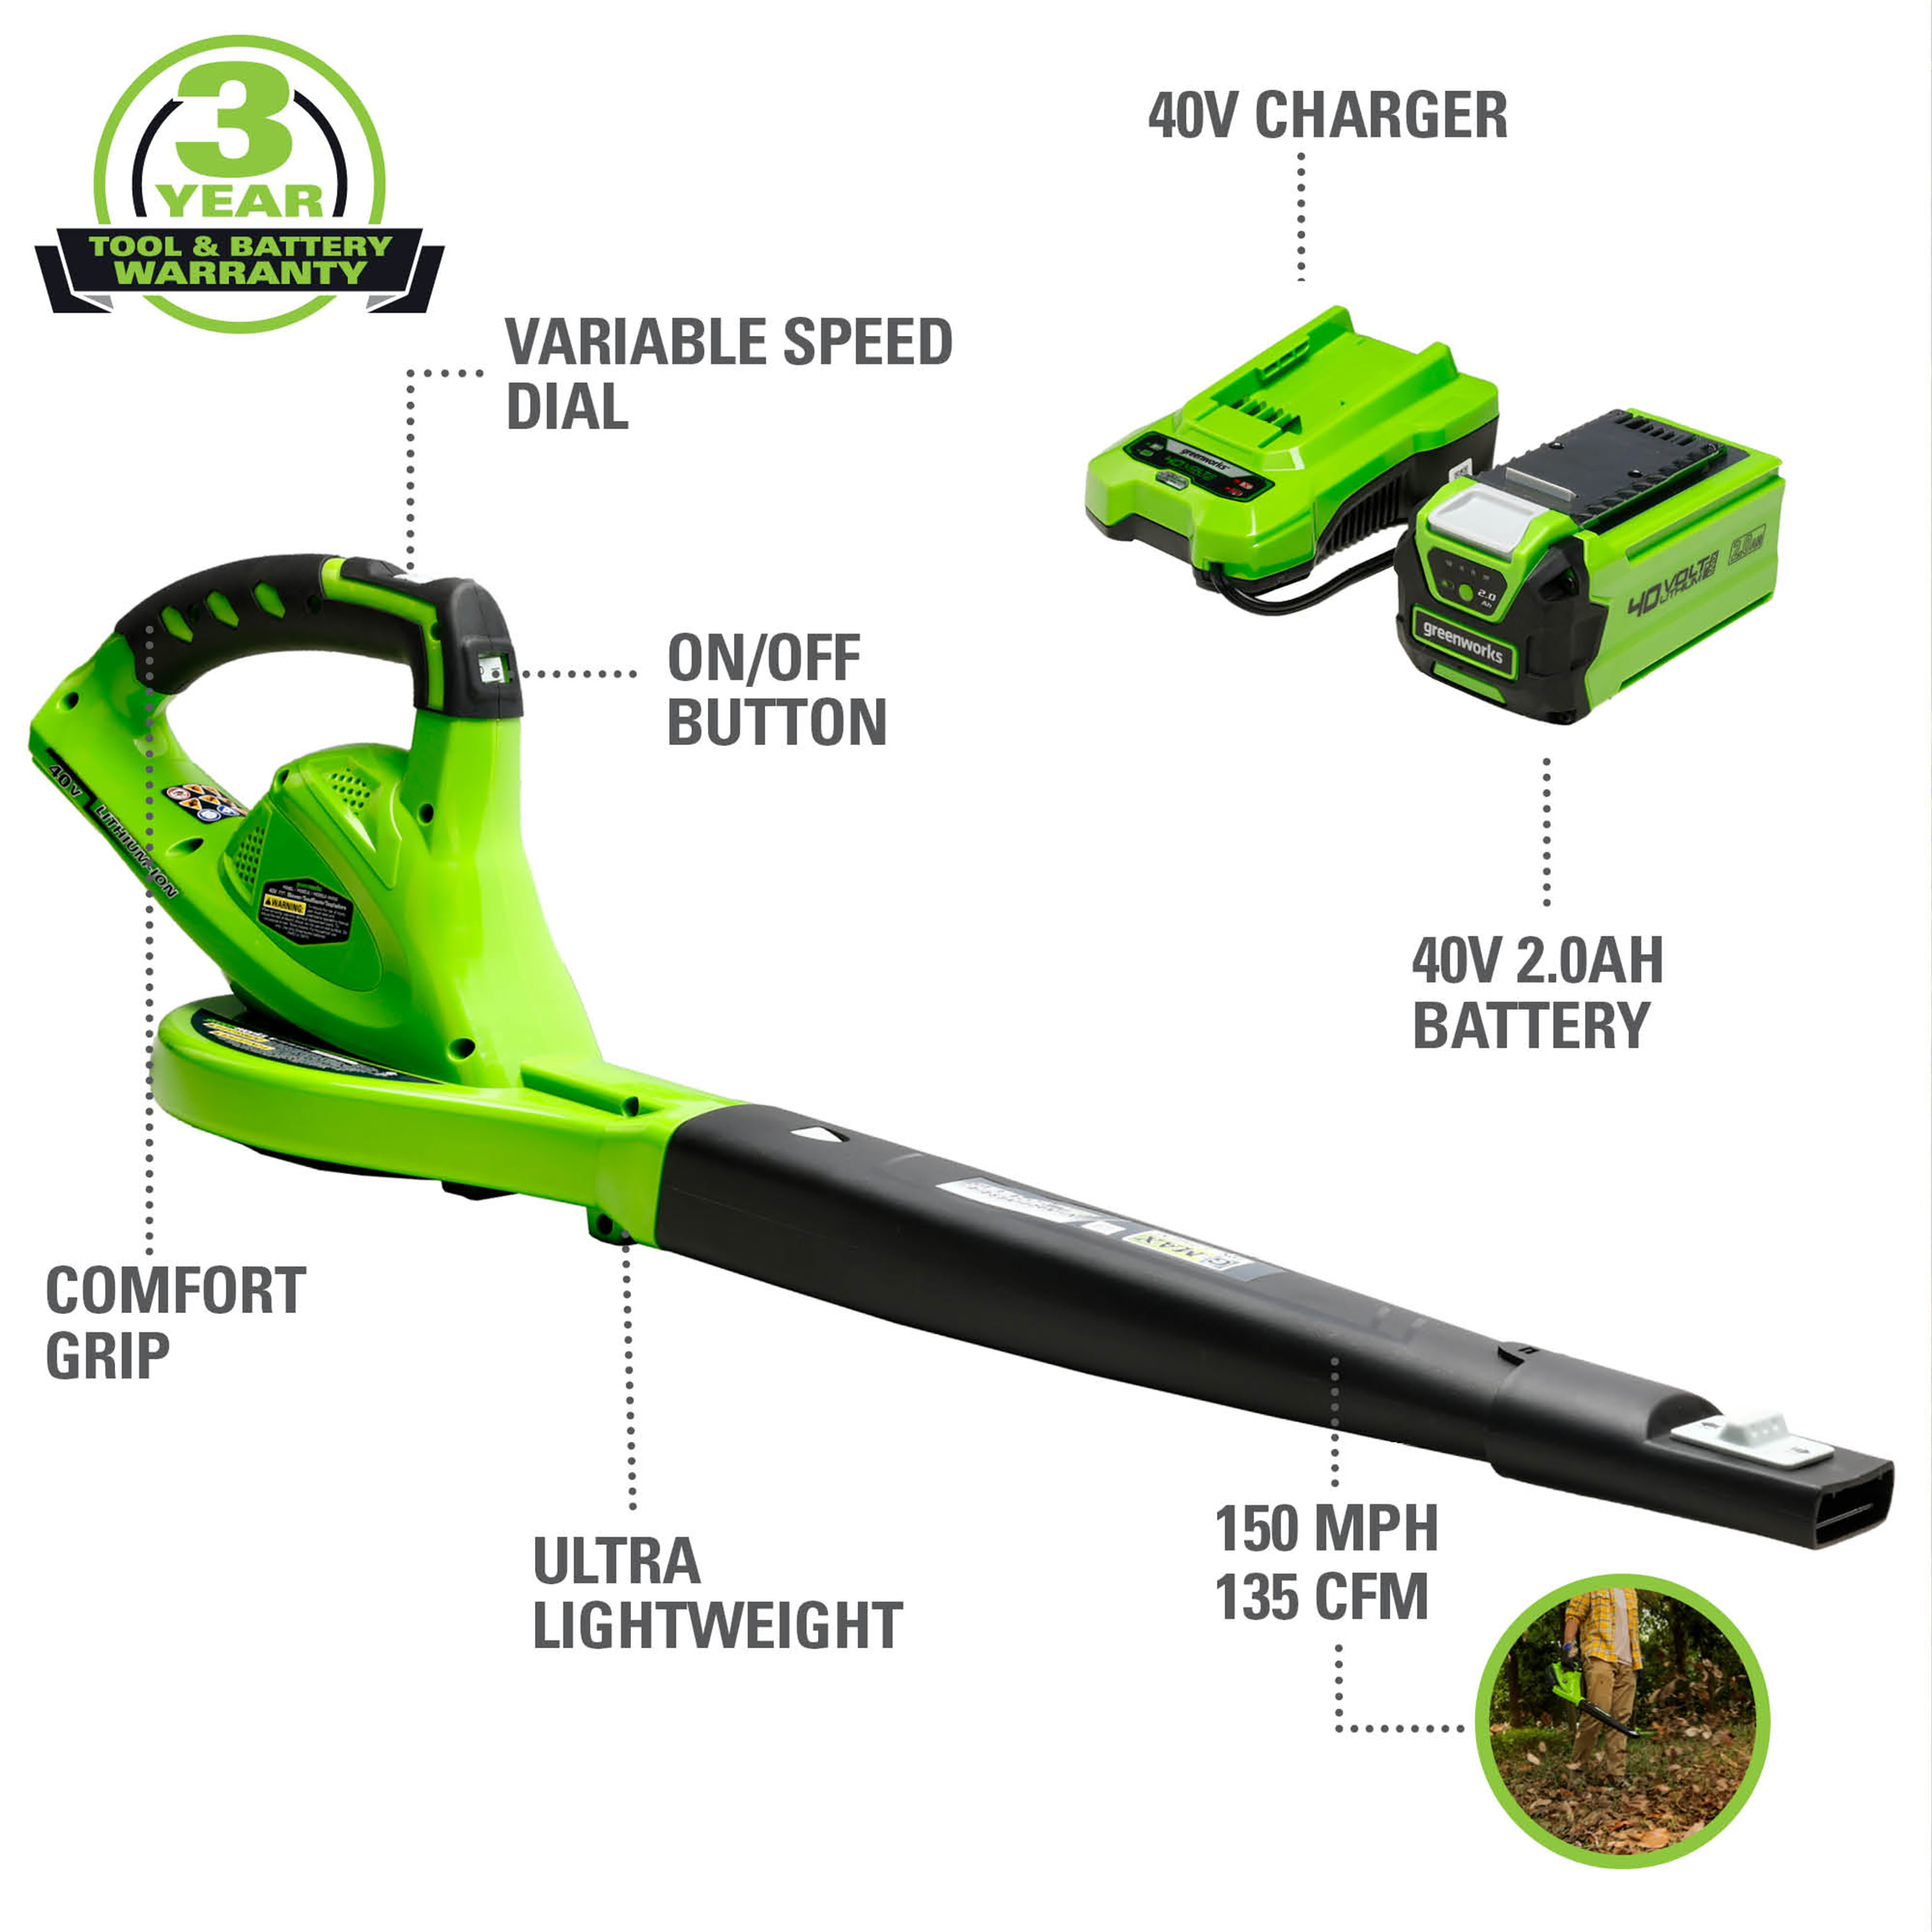 Greenworks 40V 135 CFM Leaf Blower/Sweeper w/2.0 Ah Battery, 24252 - image 3 of 12